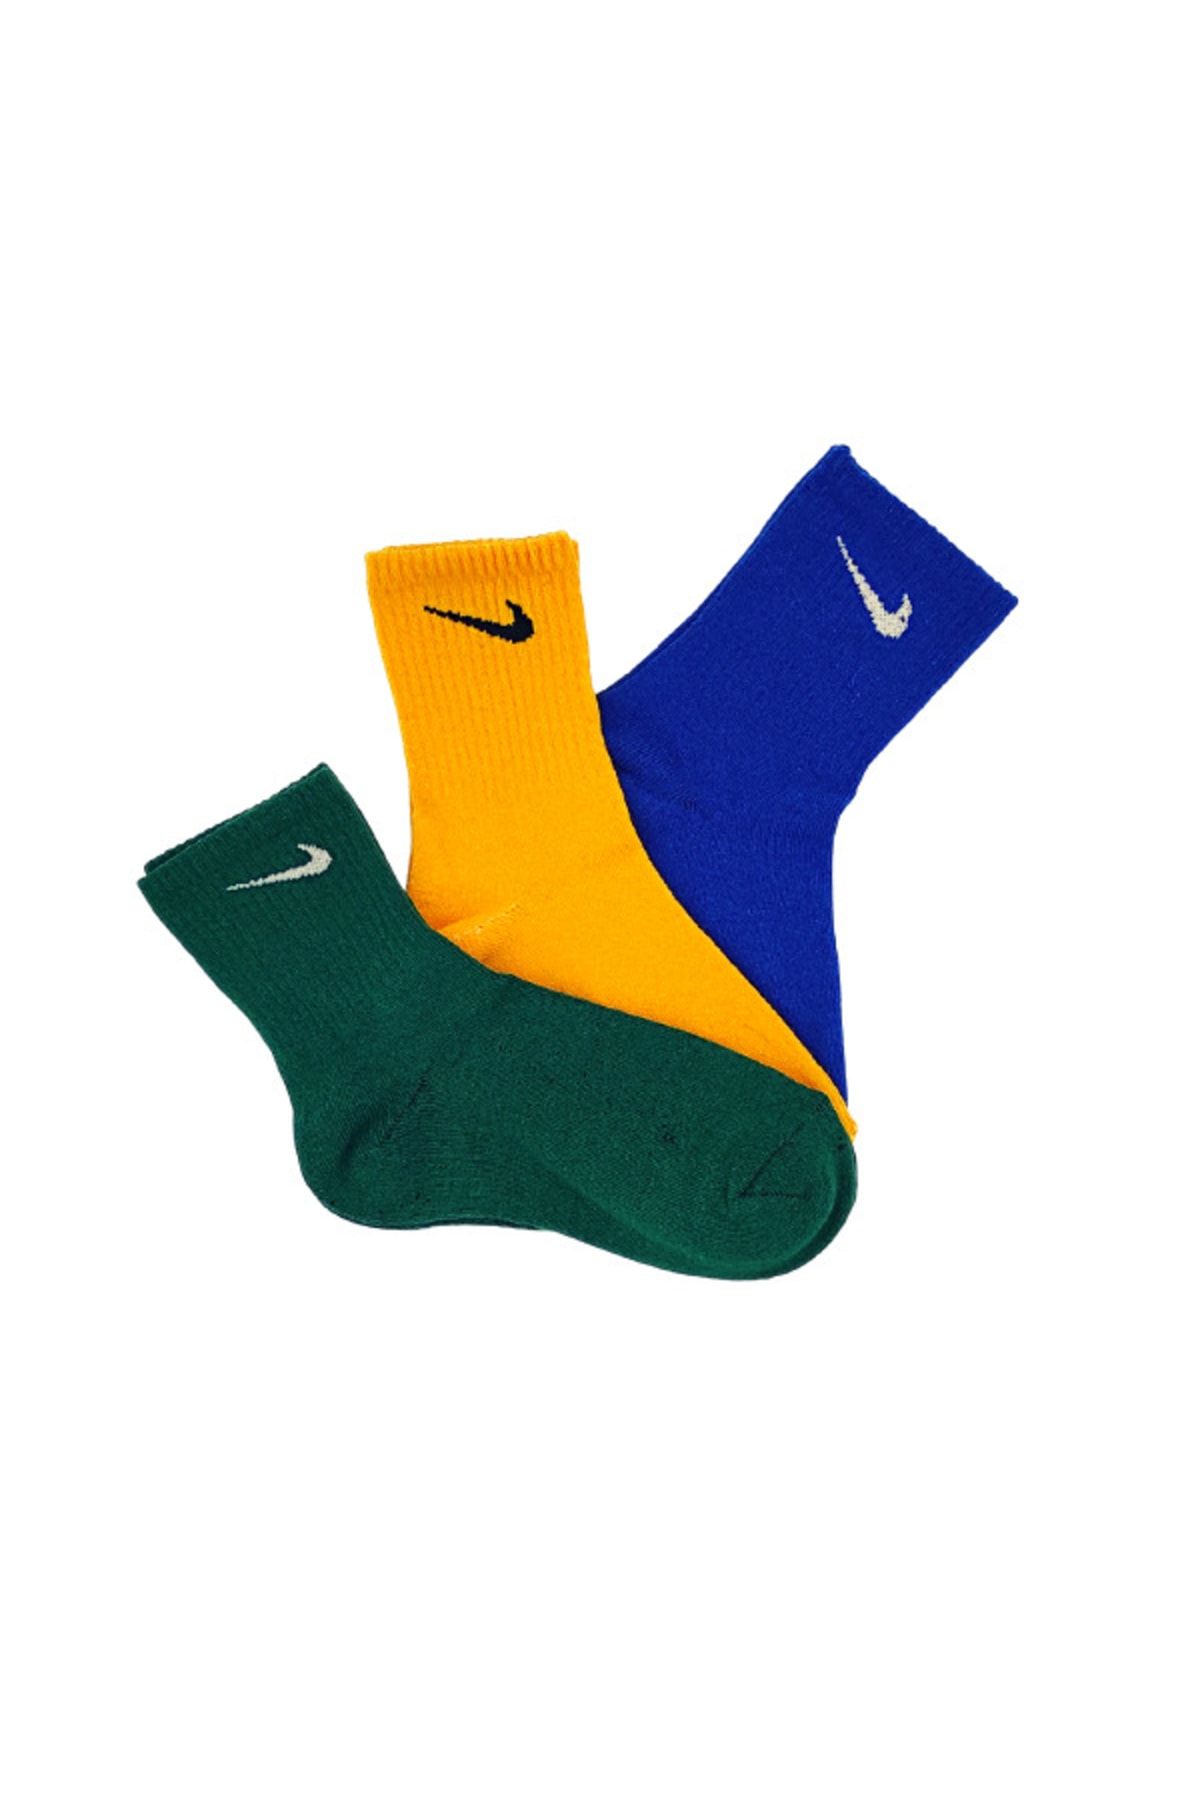 Genel Markalar 3'lü Unisex Mavi Sarı Yeşil Antrenman Spor Tenis Futbol Basketbol Koşu Soket Çorap Seti